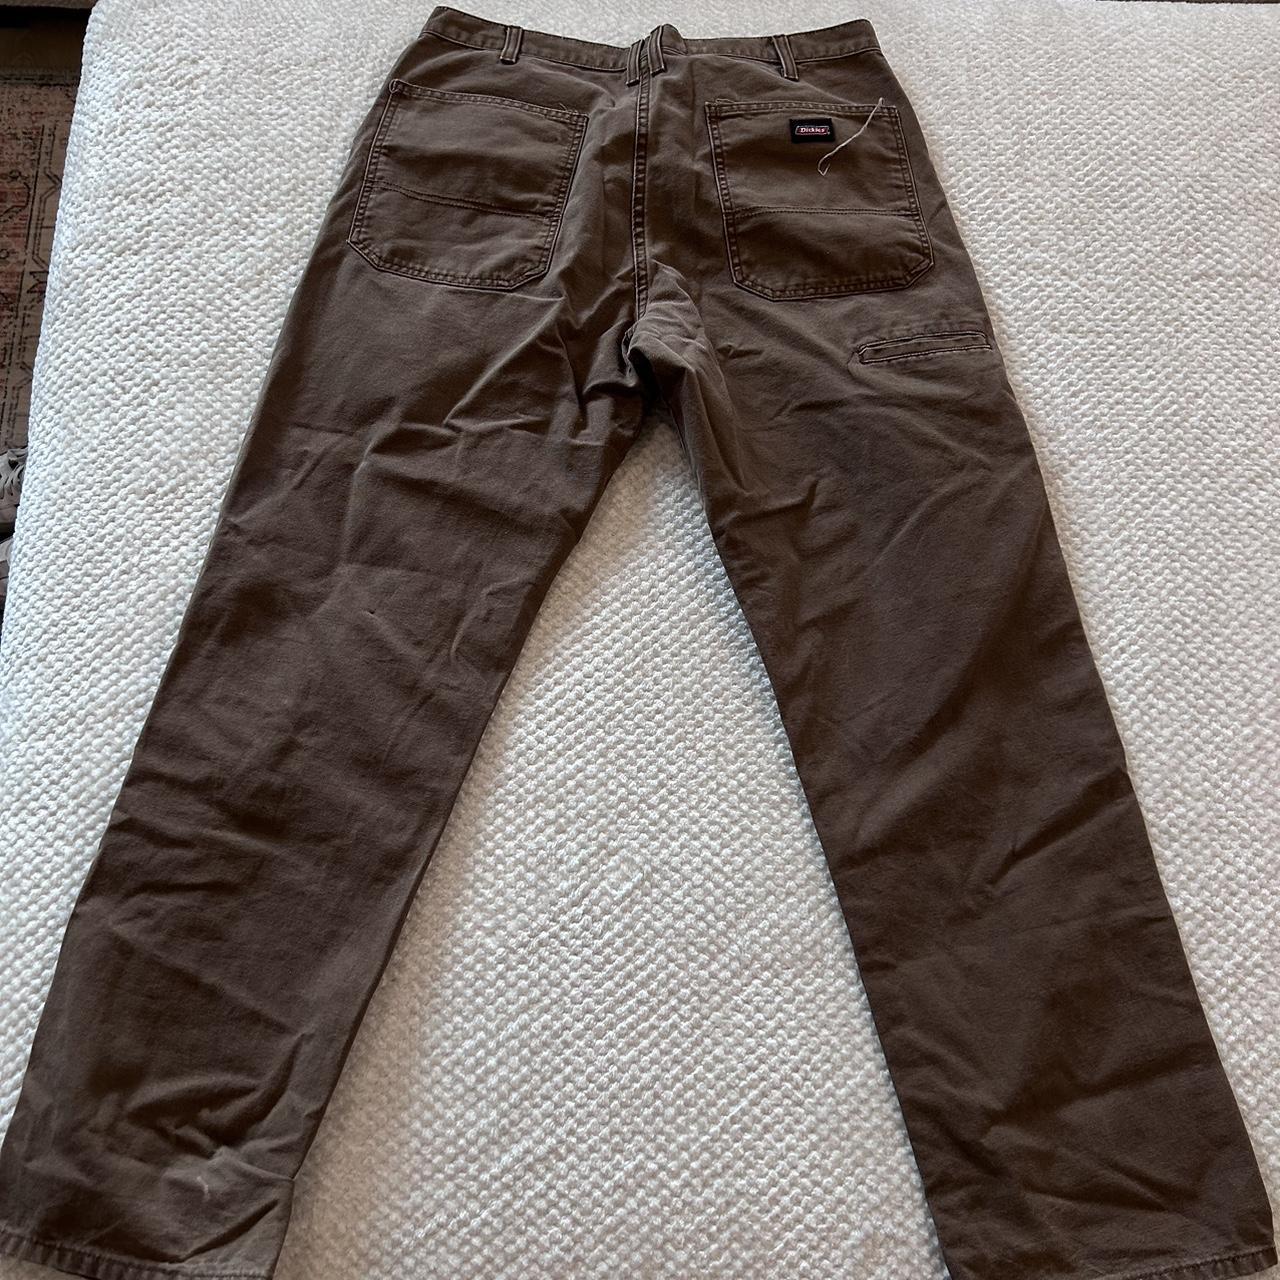 vintage dickies pants, cool distressing W34 L32 Leg... - Depop